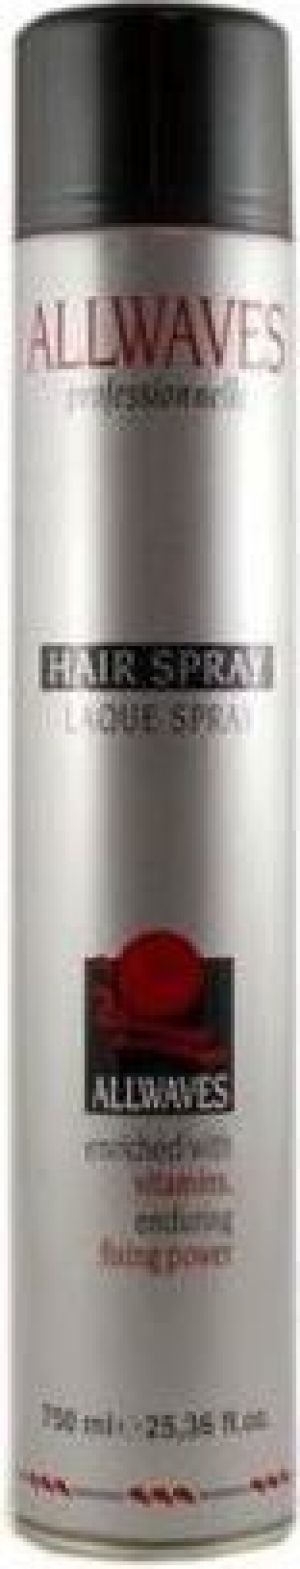 Allwaves Laque Spray Lakier do włosów 300ml 1